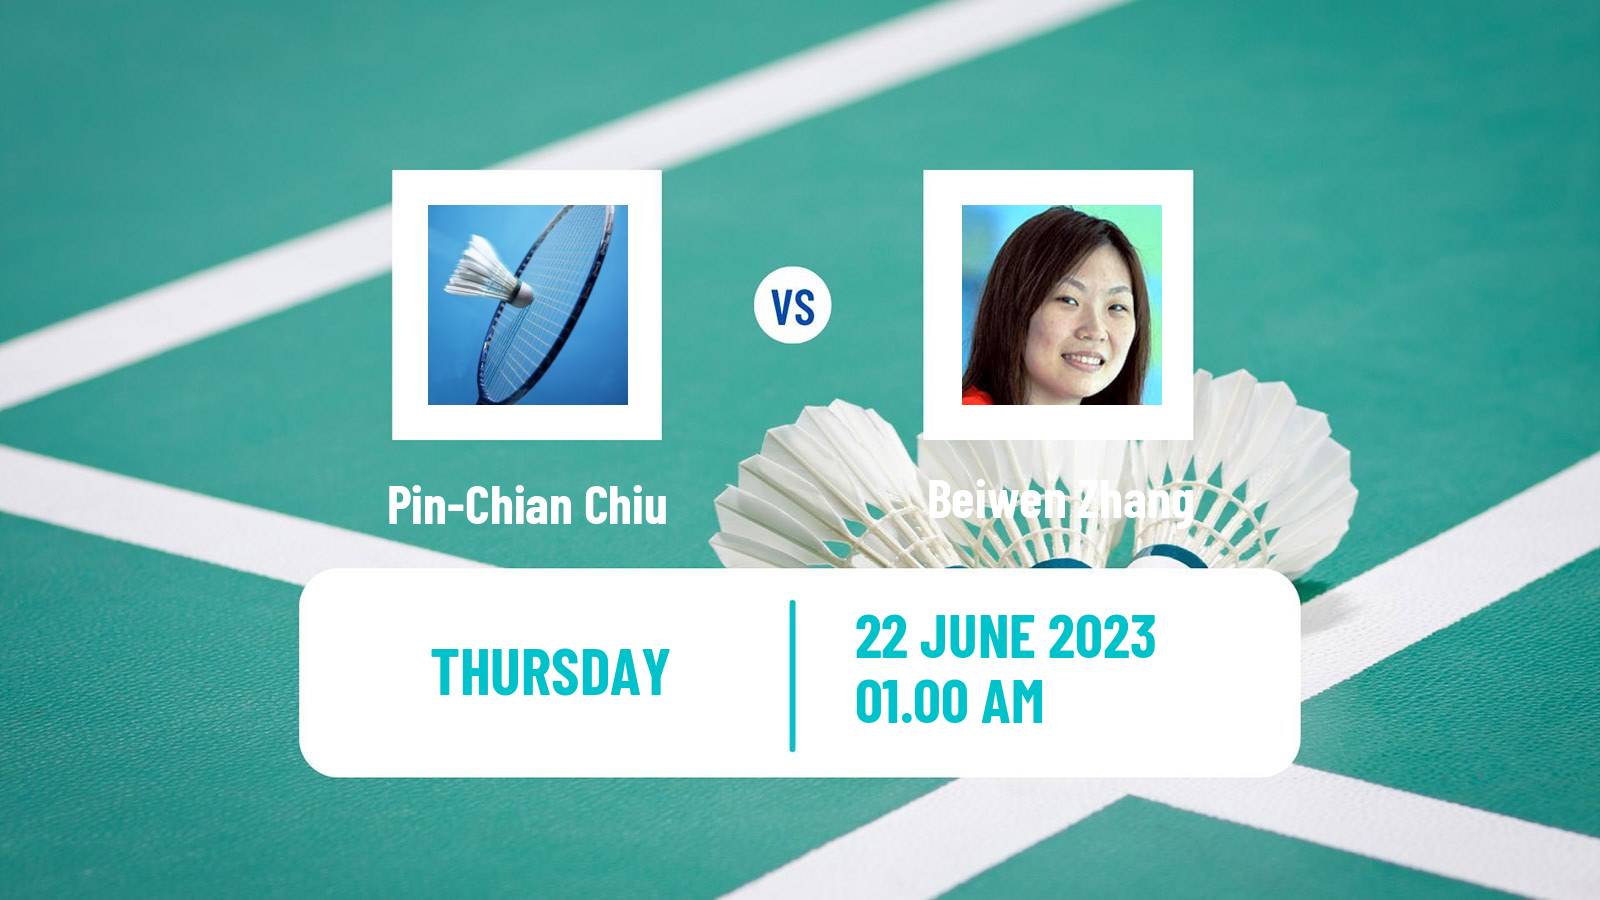 Badminton BWF World Tour Chinese Taipei Open Women Pin-Chian Chiu - Beiwen Zhang